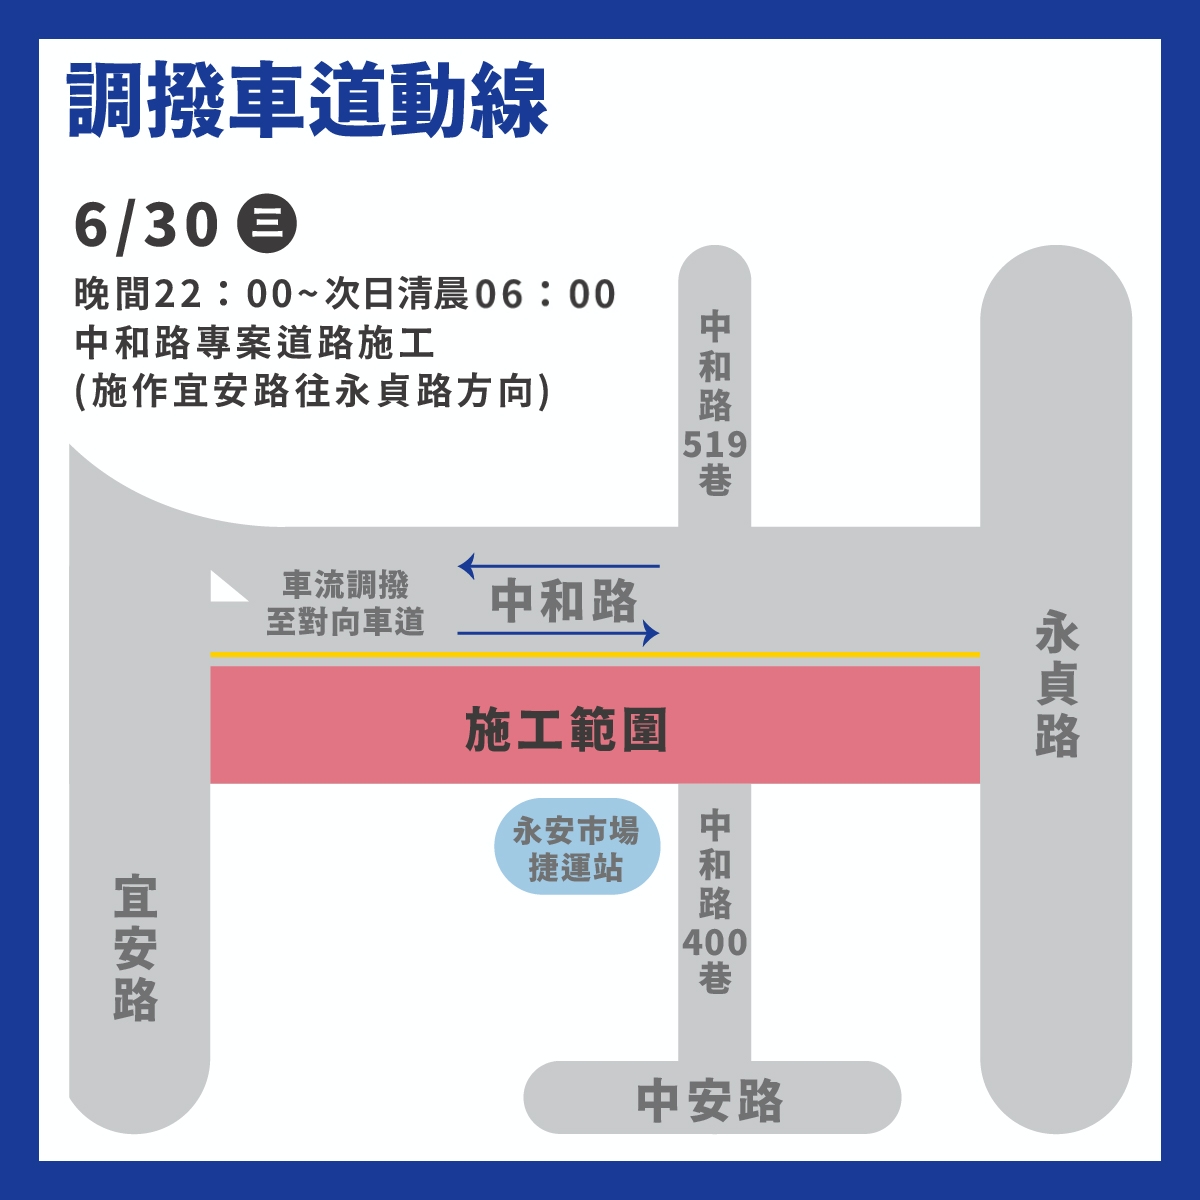 6月30日晚上10時至隔日上午6時將封閉宜安路往永貞路方向，以對向調撥方式協助用路人通行。